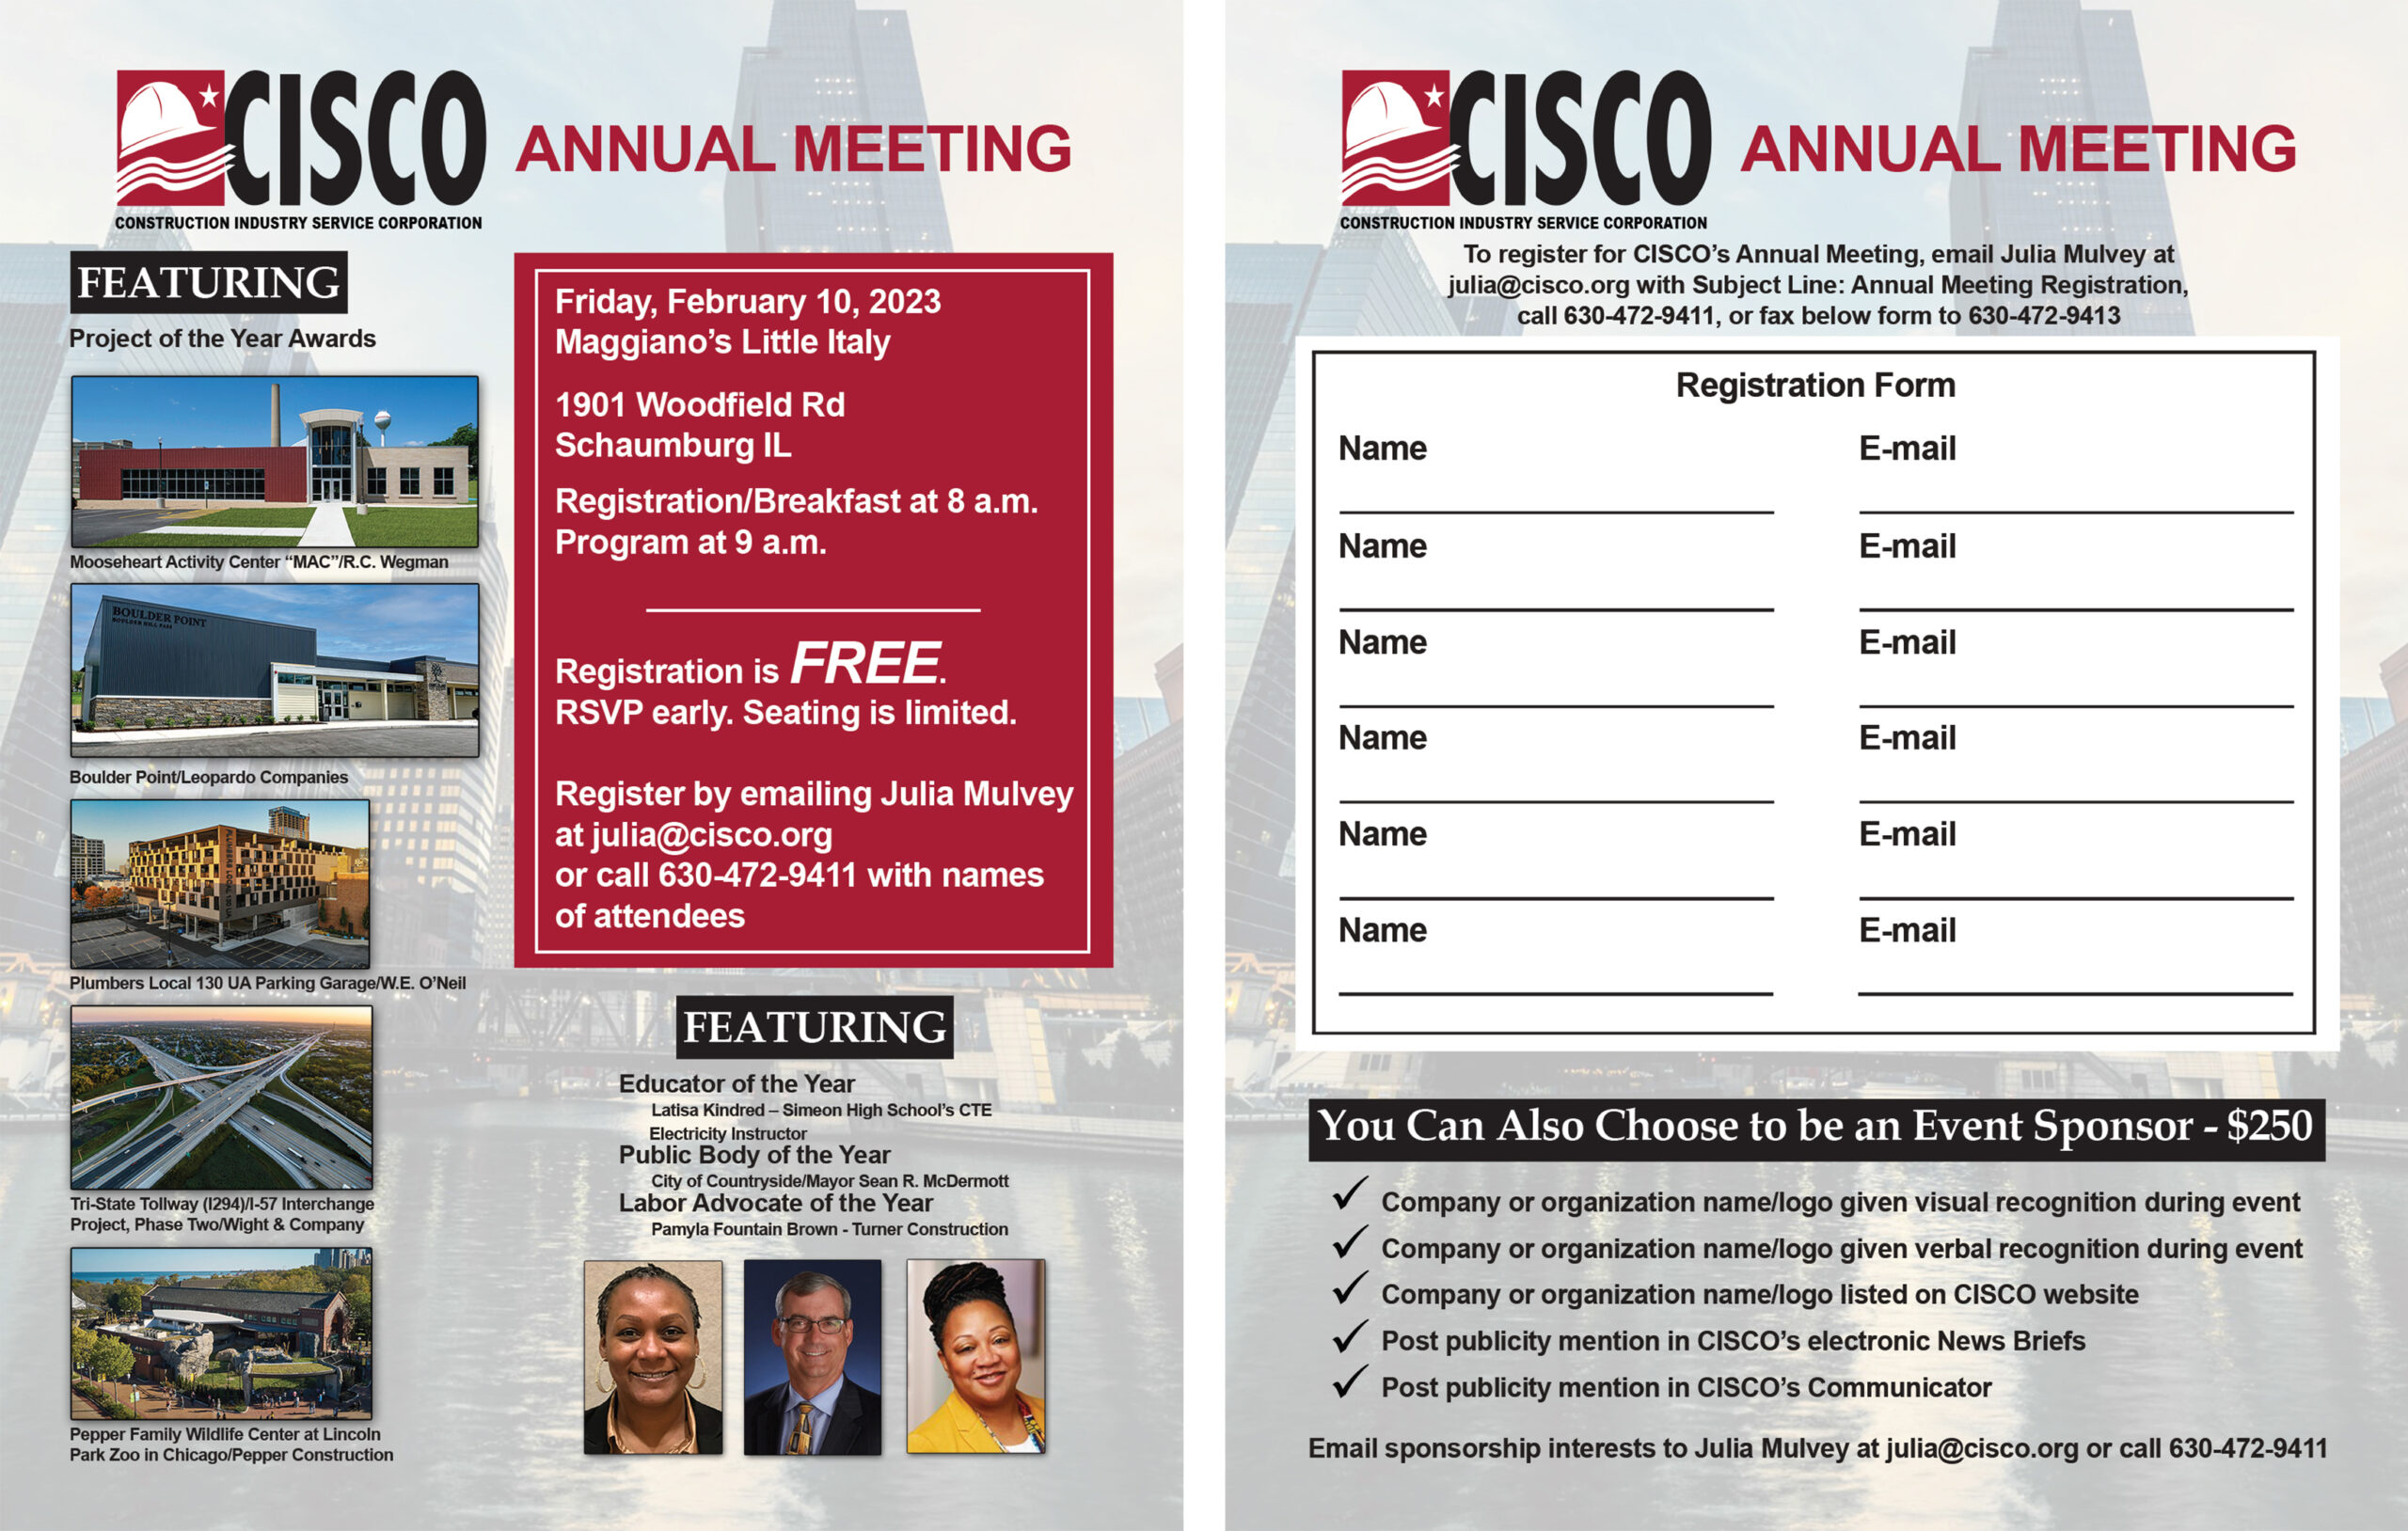 CISCO Annual Meeting